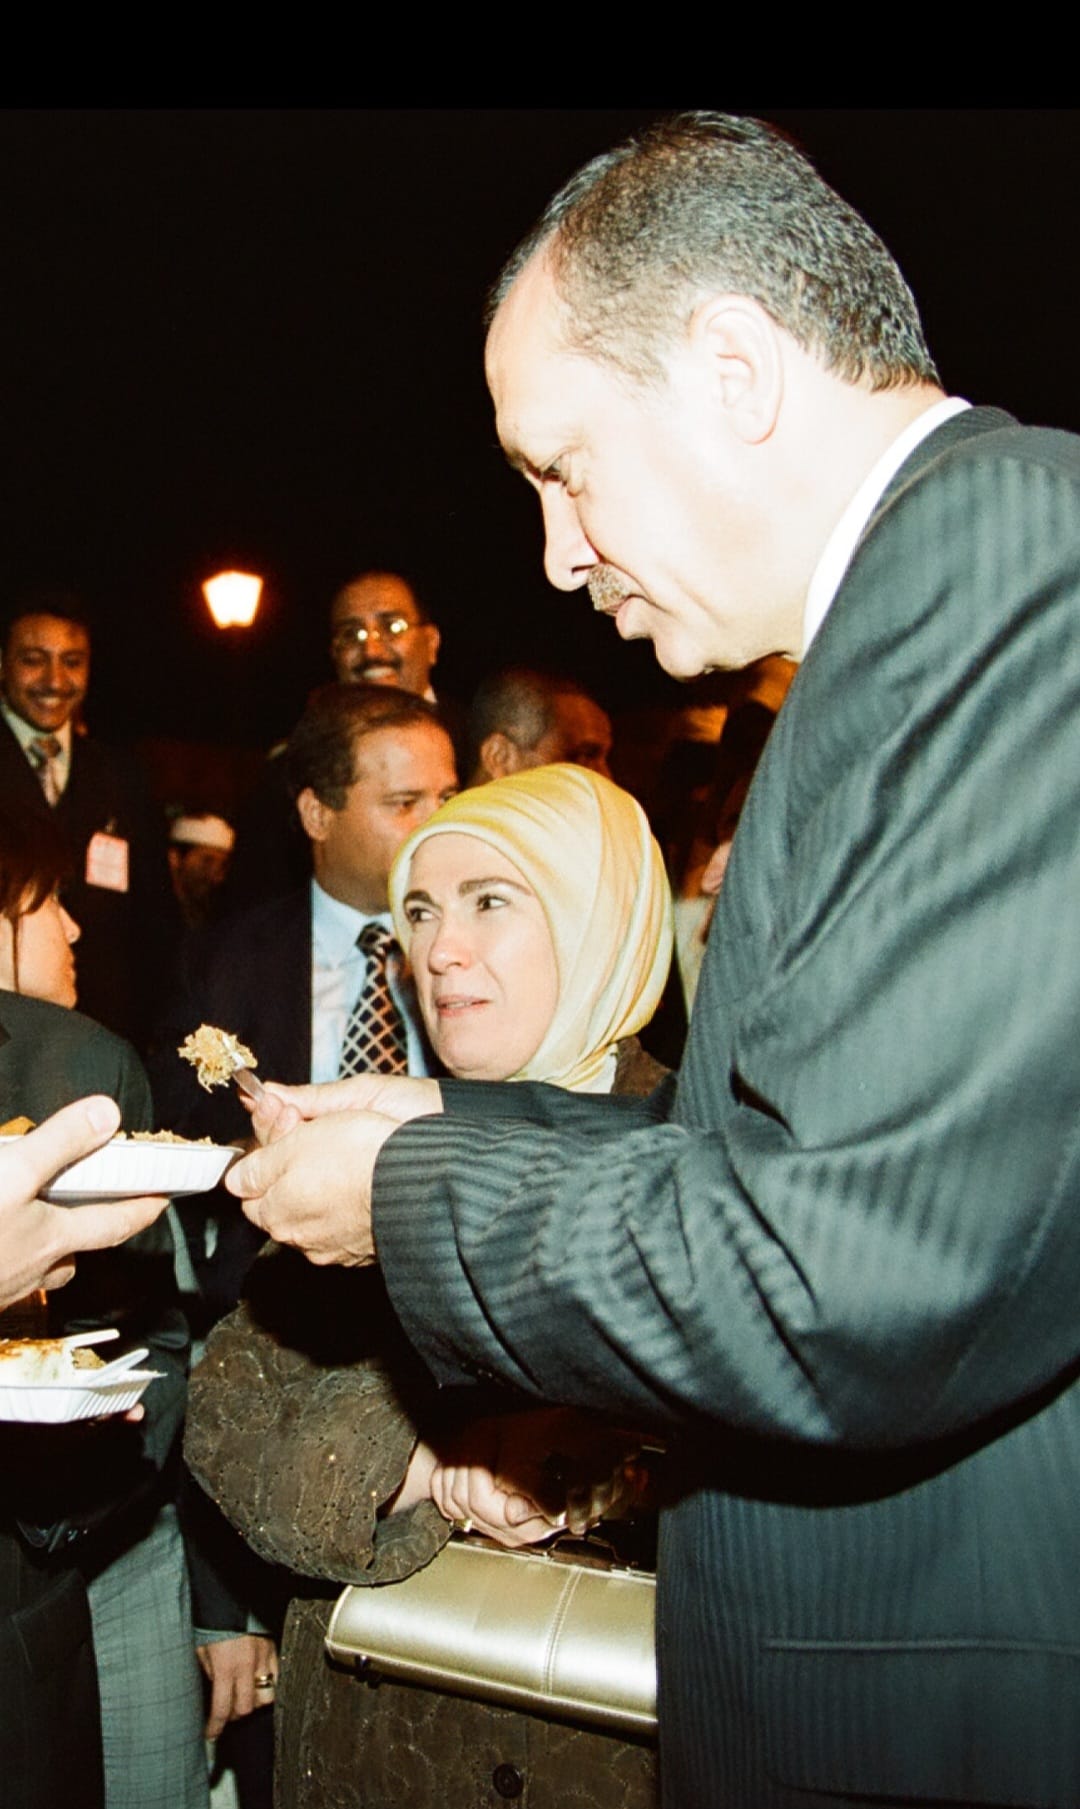 شاهد ألبوم مصور لزيارة الرئيس التركي رجب طيب أردوغان للعاصمة صنعاء